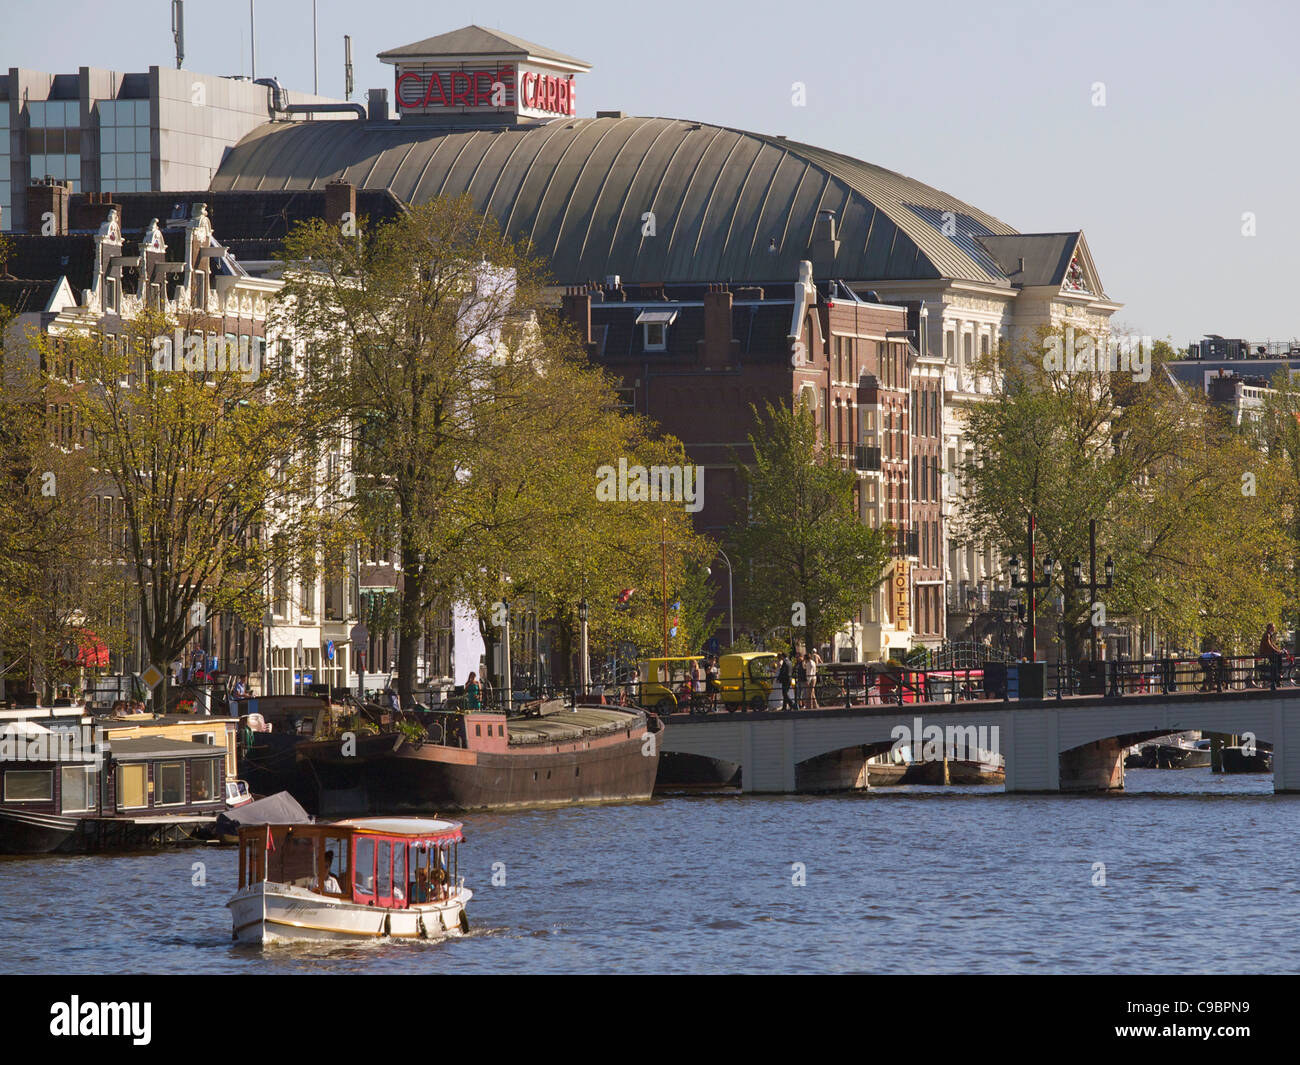 Le plus célèbre théâtre dans les Pays Bas, Carré, sur la rive de la rivière Amstel, à Amsterdam. Banque D'Images